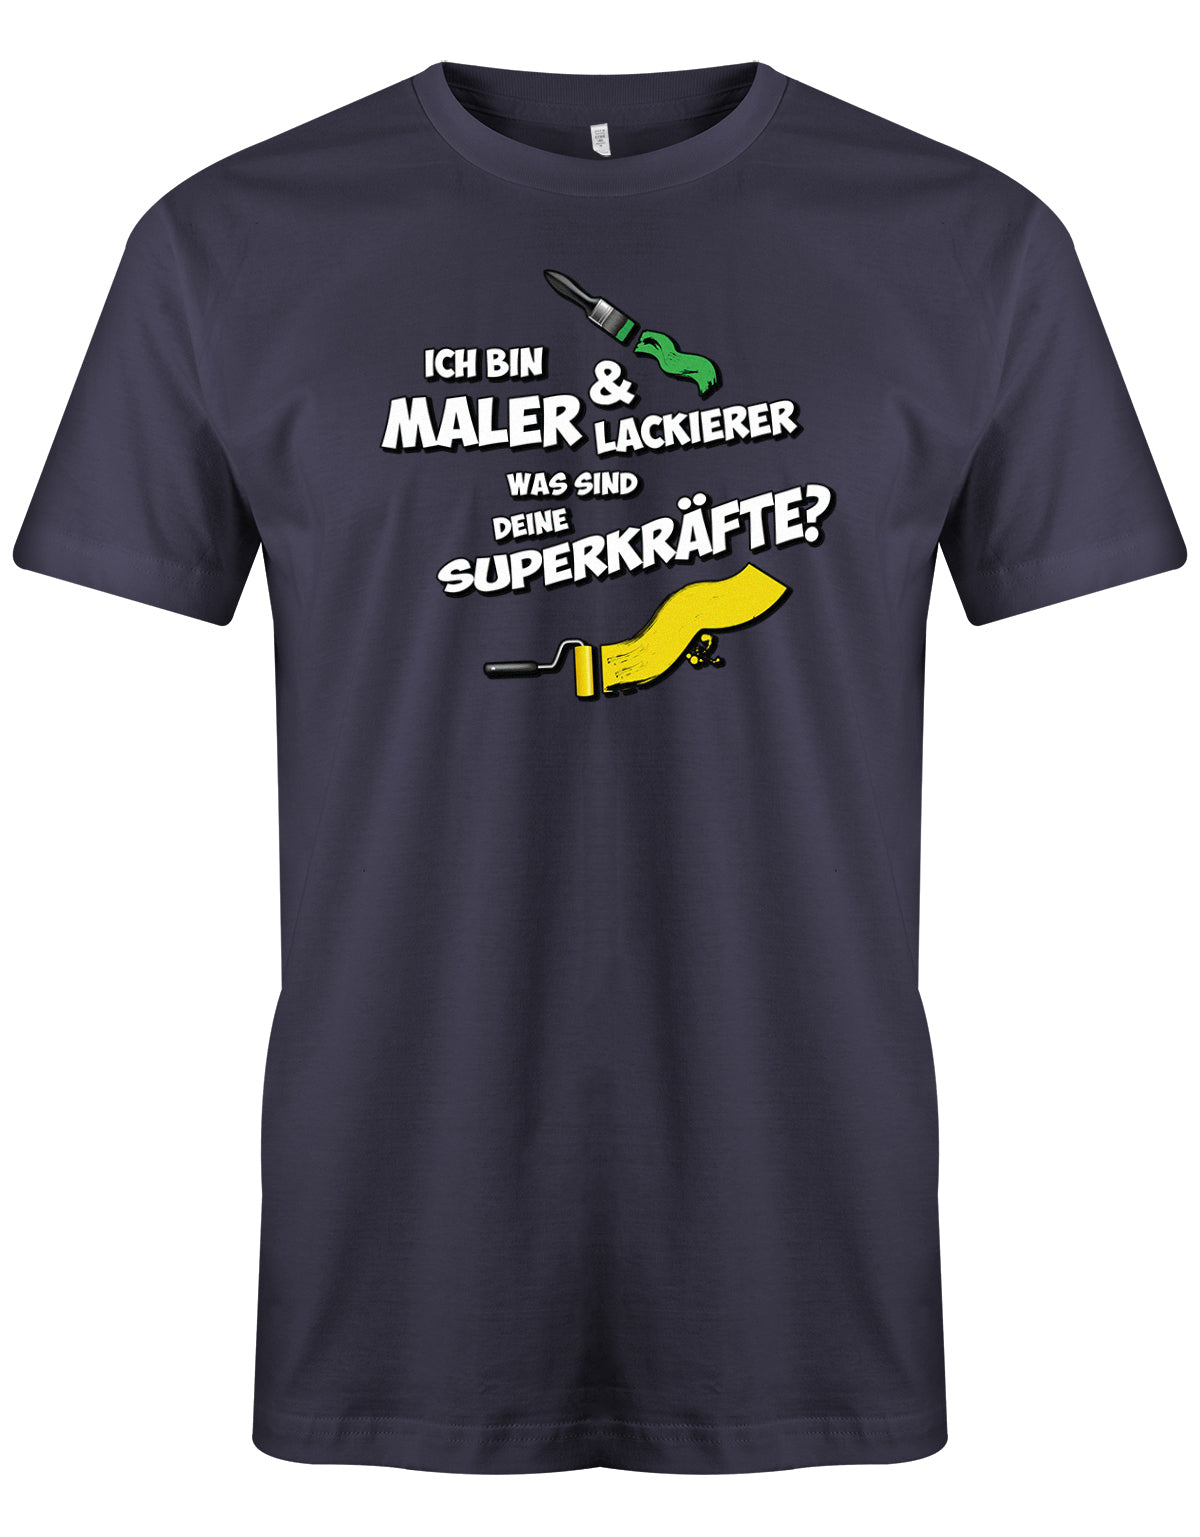 Maler und Lackierer Shirt - Ich bin Maler und Lackierer, was sind deine Superkräfte? Navy